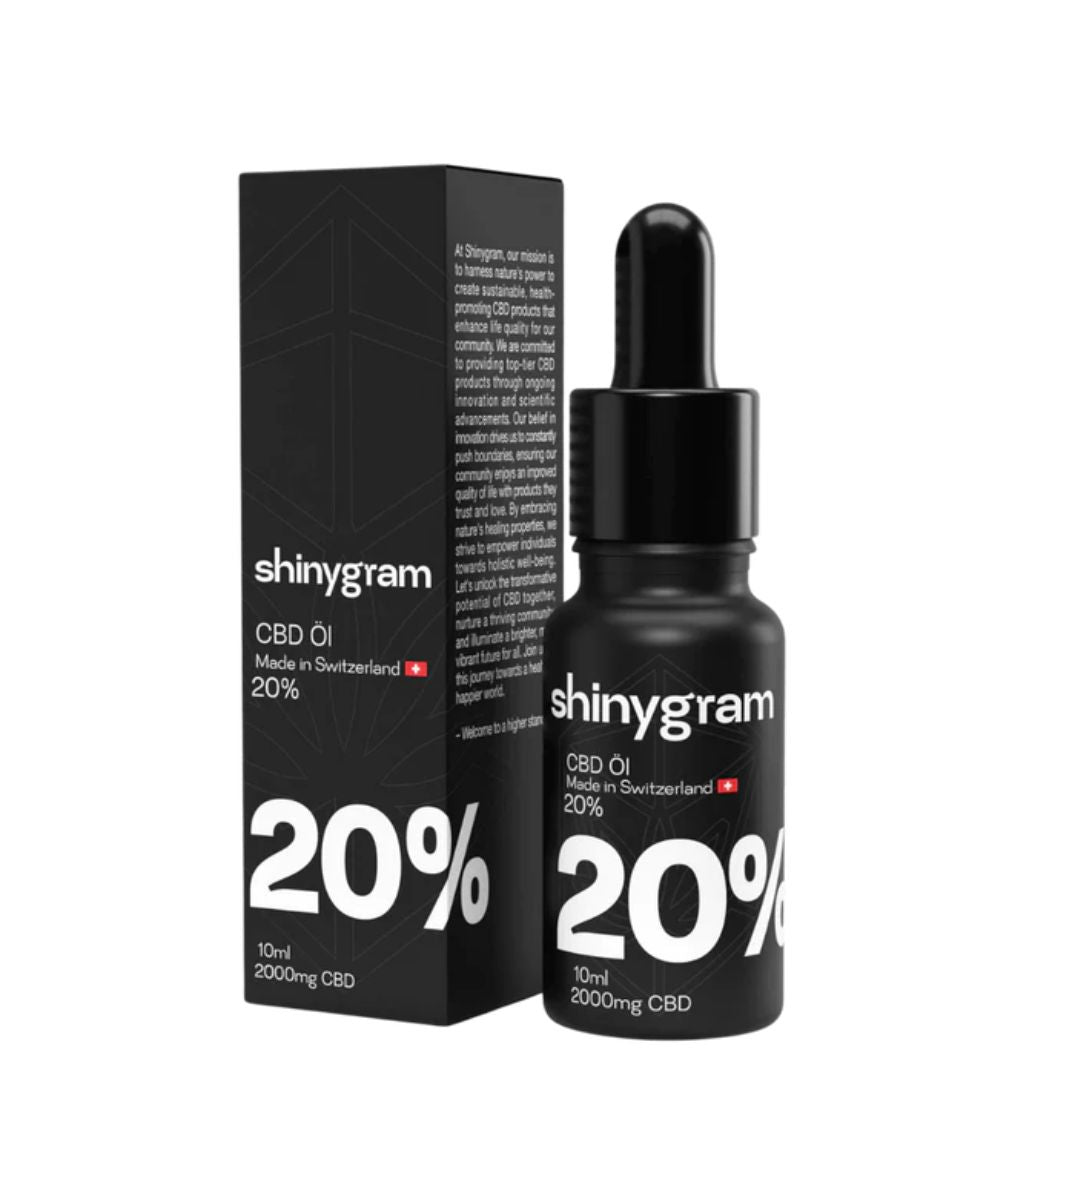 Shinygram 20% CBD Öl, 2000mg in hochkonzentrierter Formel, präsentiert in einer professionellen schwarzen Verpackung, für maximale Stärke und Effektivität, hergestellt in der Schweiz.